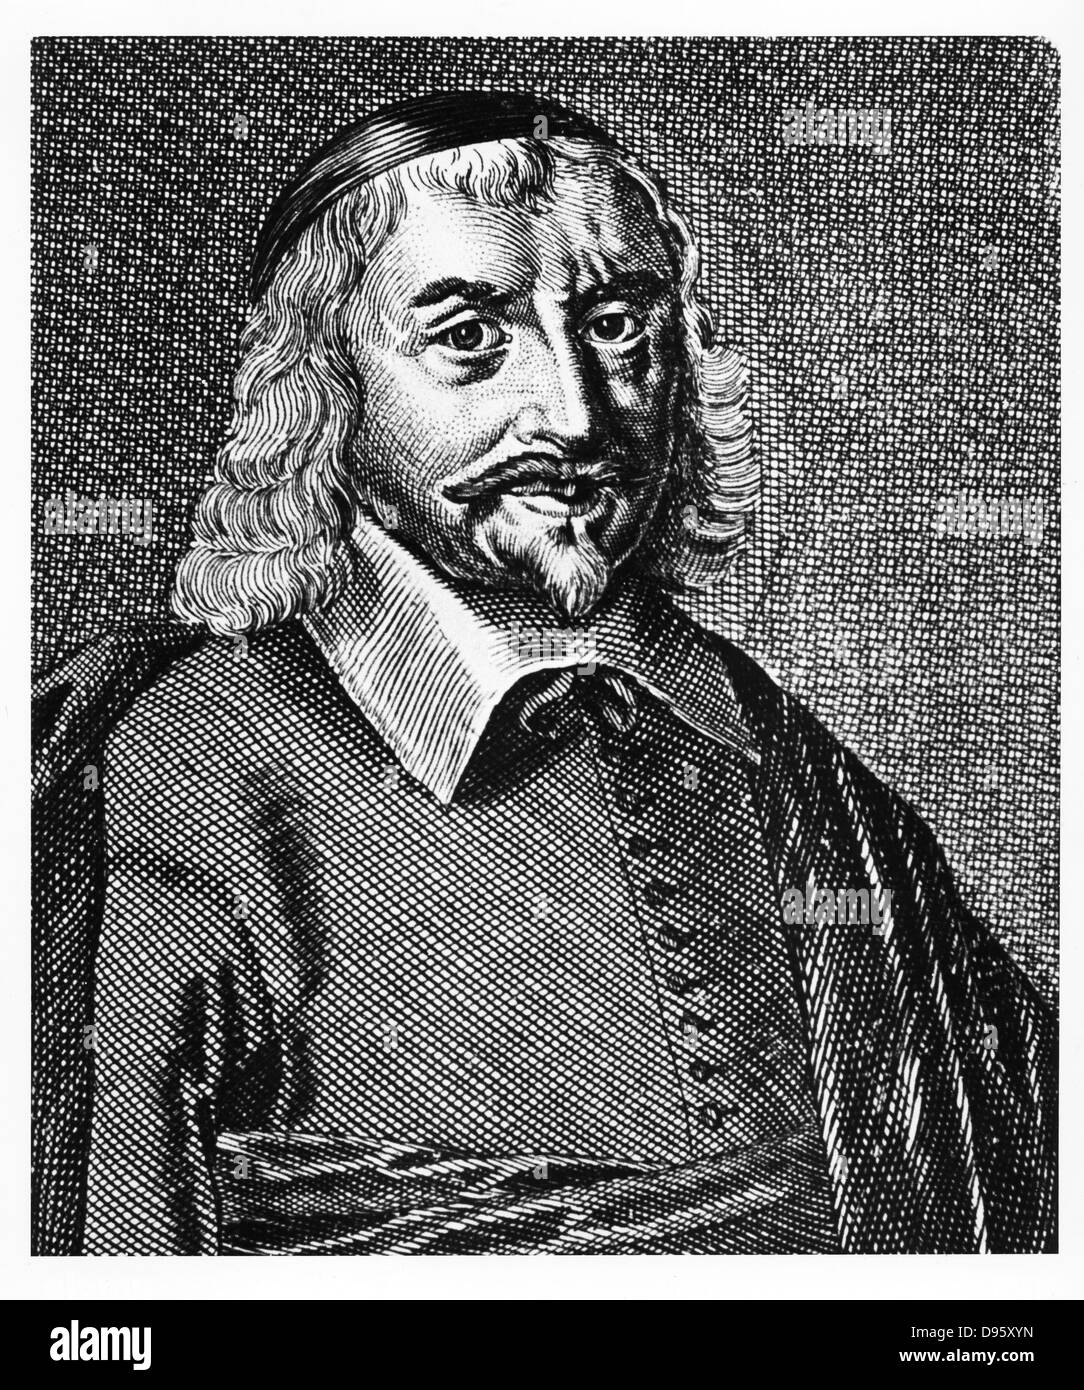 Thomas Hobbes (1588-1679) philosophe politique anglais, né à Malmesbury, Wiltshire. Soutenu pour règle absolue. La gravure. Dix-huitième siècle la gravure. Banque D'Images